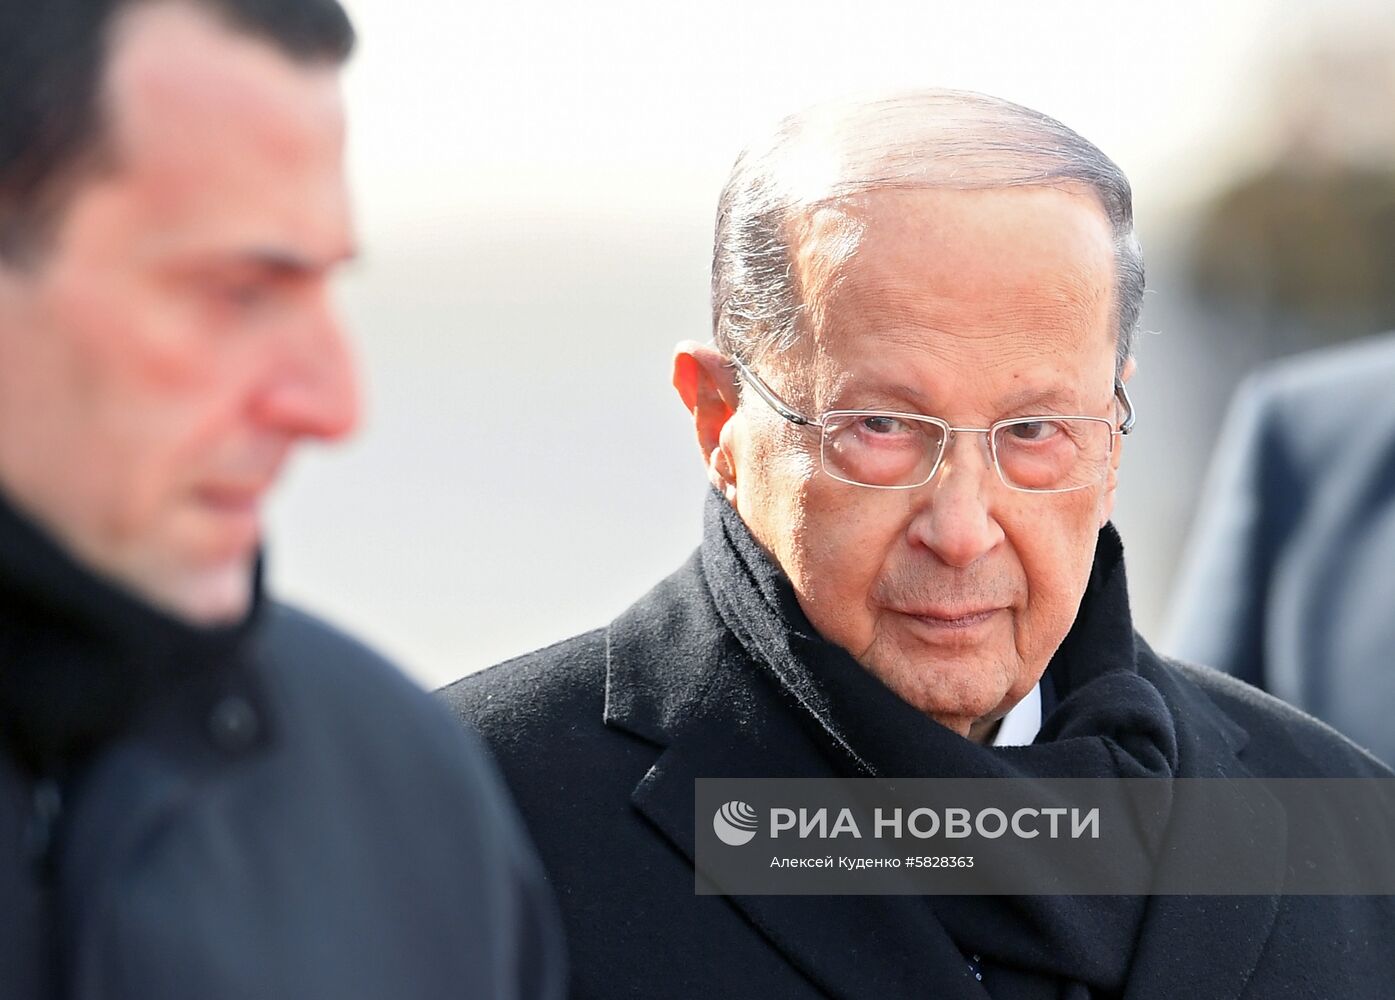 Прилет президента Ливана М. Ауна в Москву  